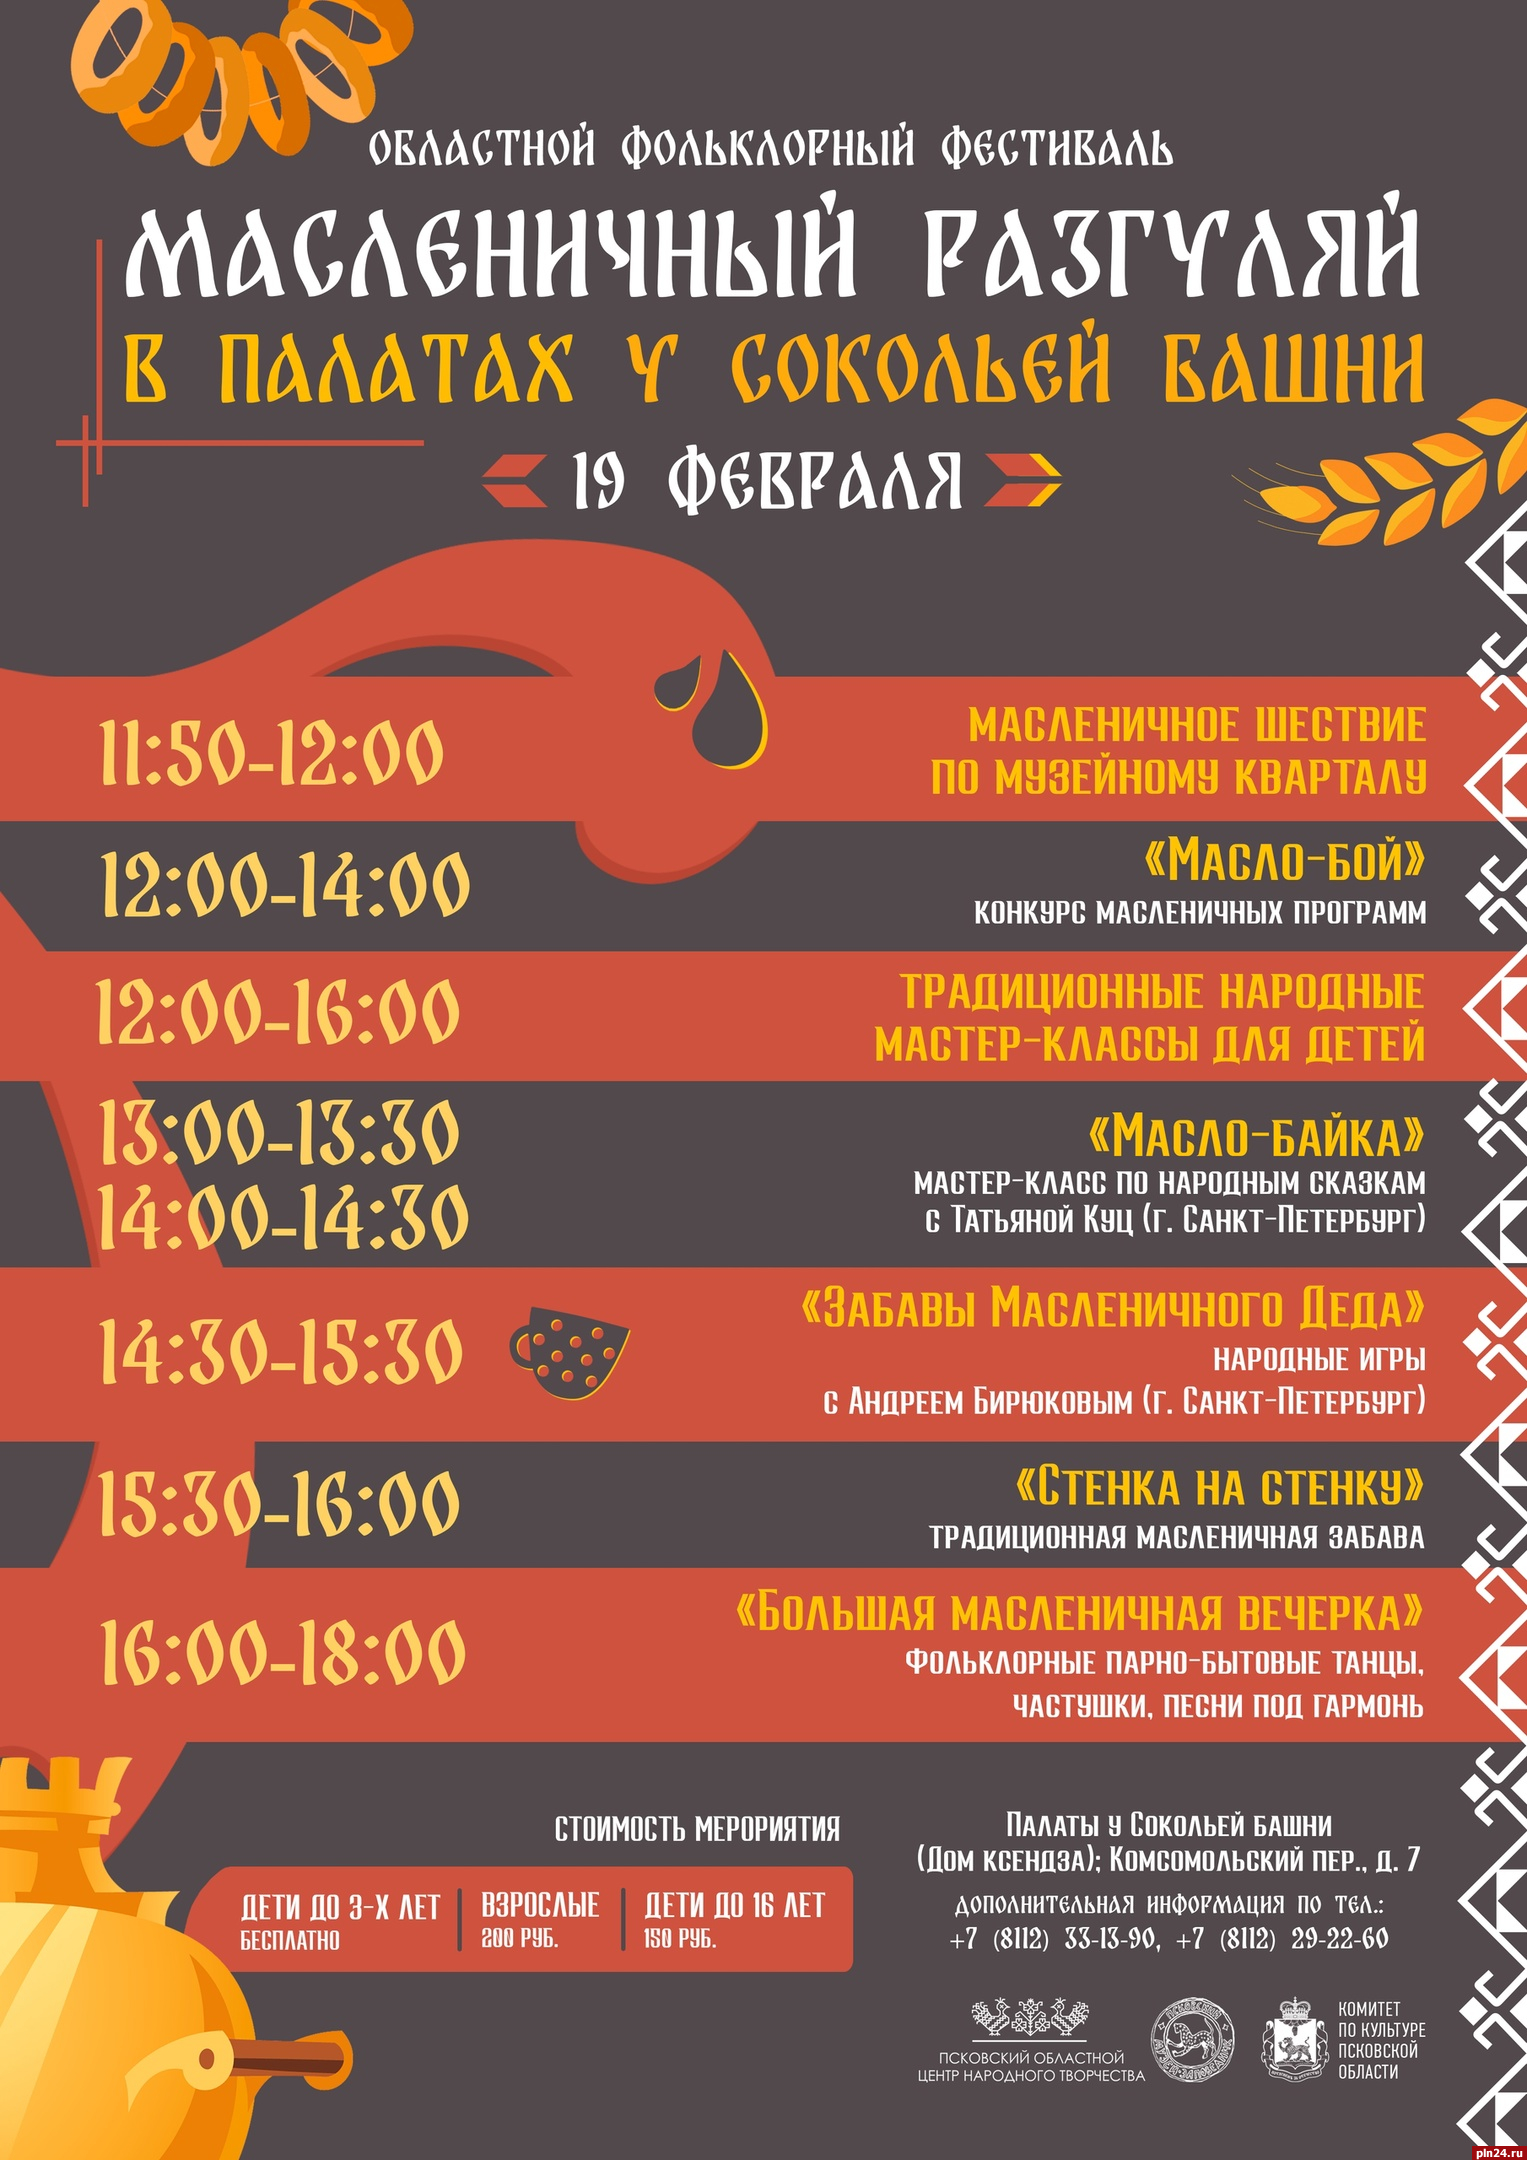 Областной фольклорный фестиваль «Масленичный разгуляй» пройдет в Пскове 19 февраля